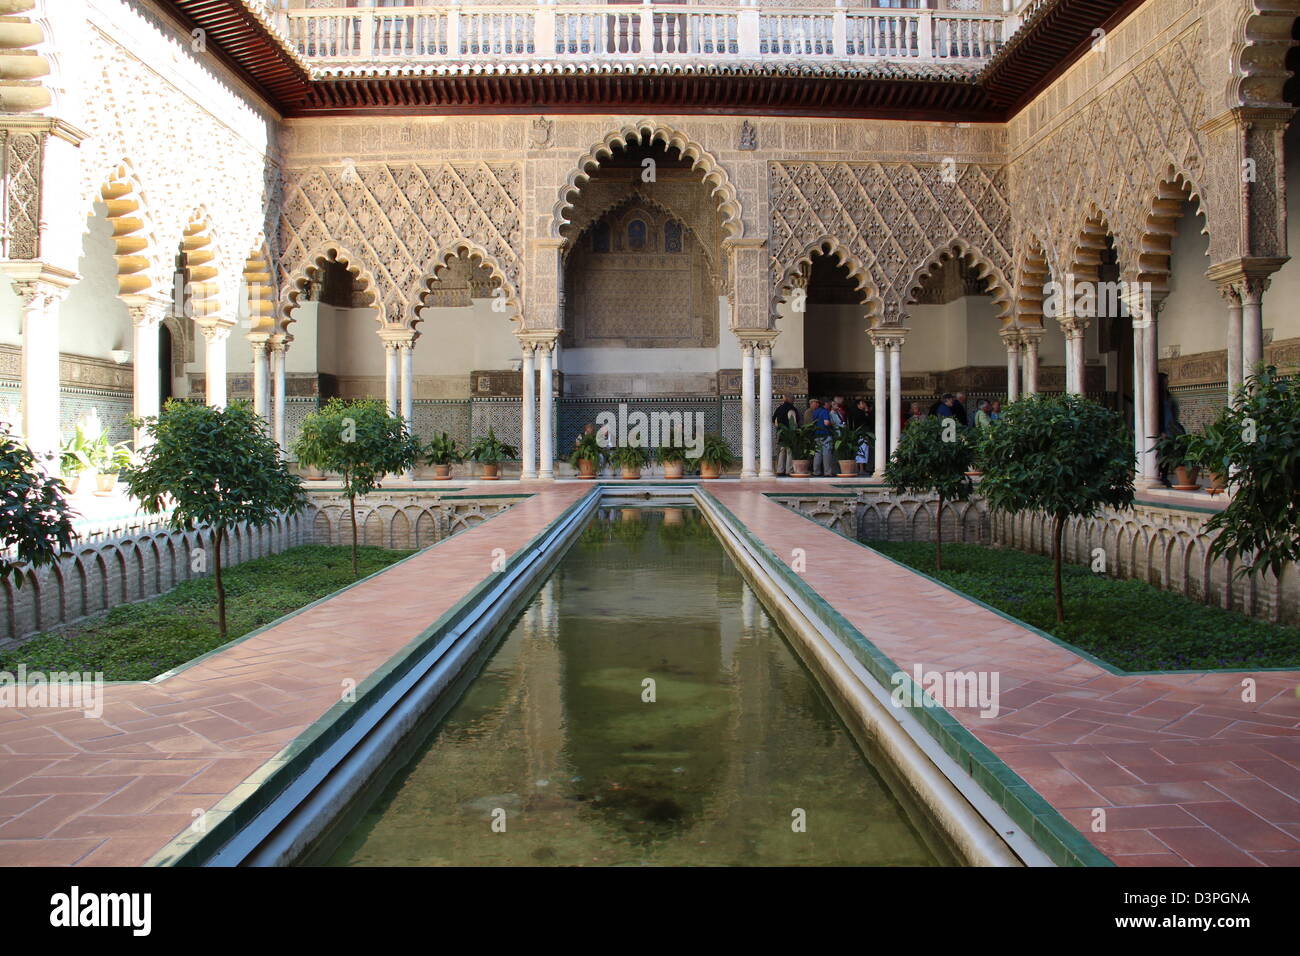 Interiors Alcazar Seville, Royal Palace, Garden,  Spain Andalusia Stock Photo